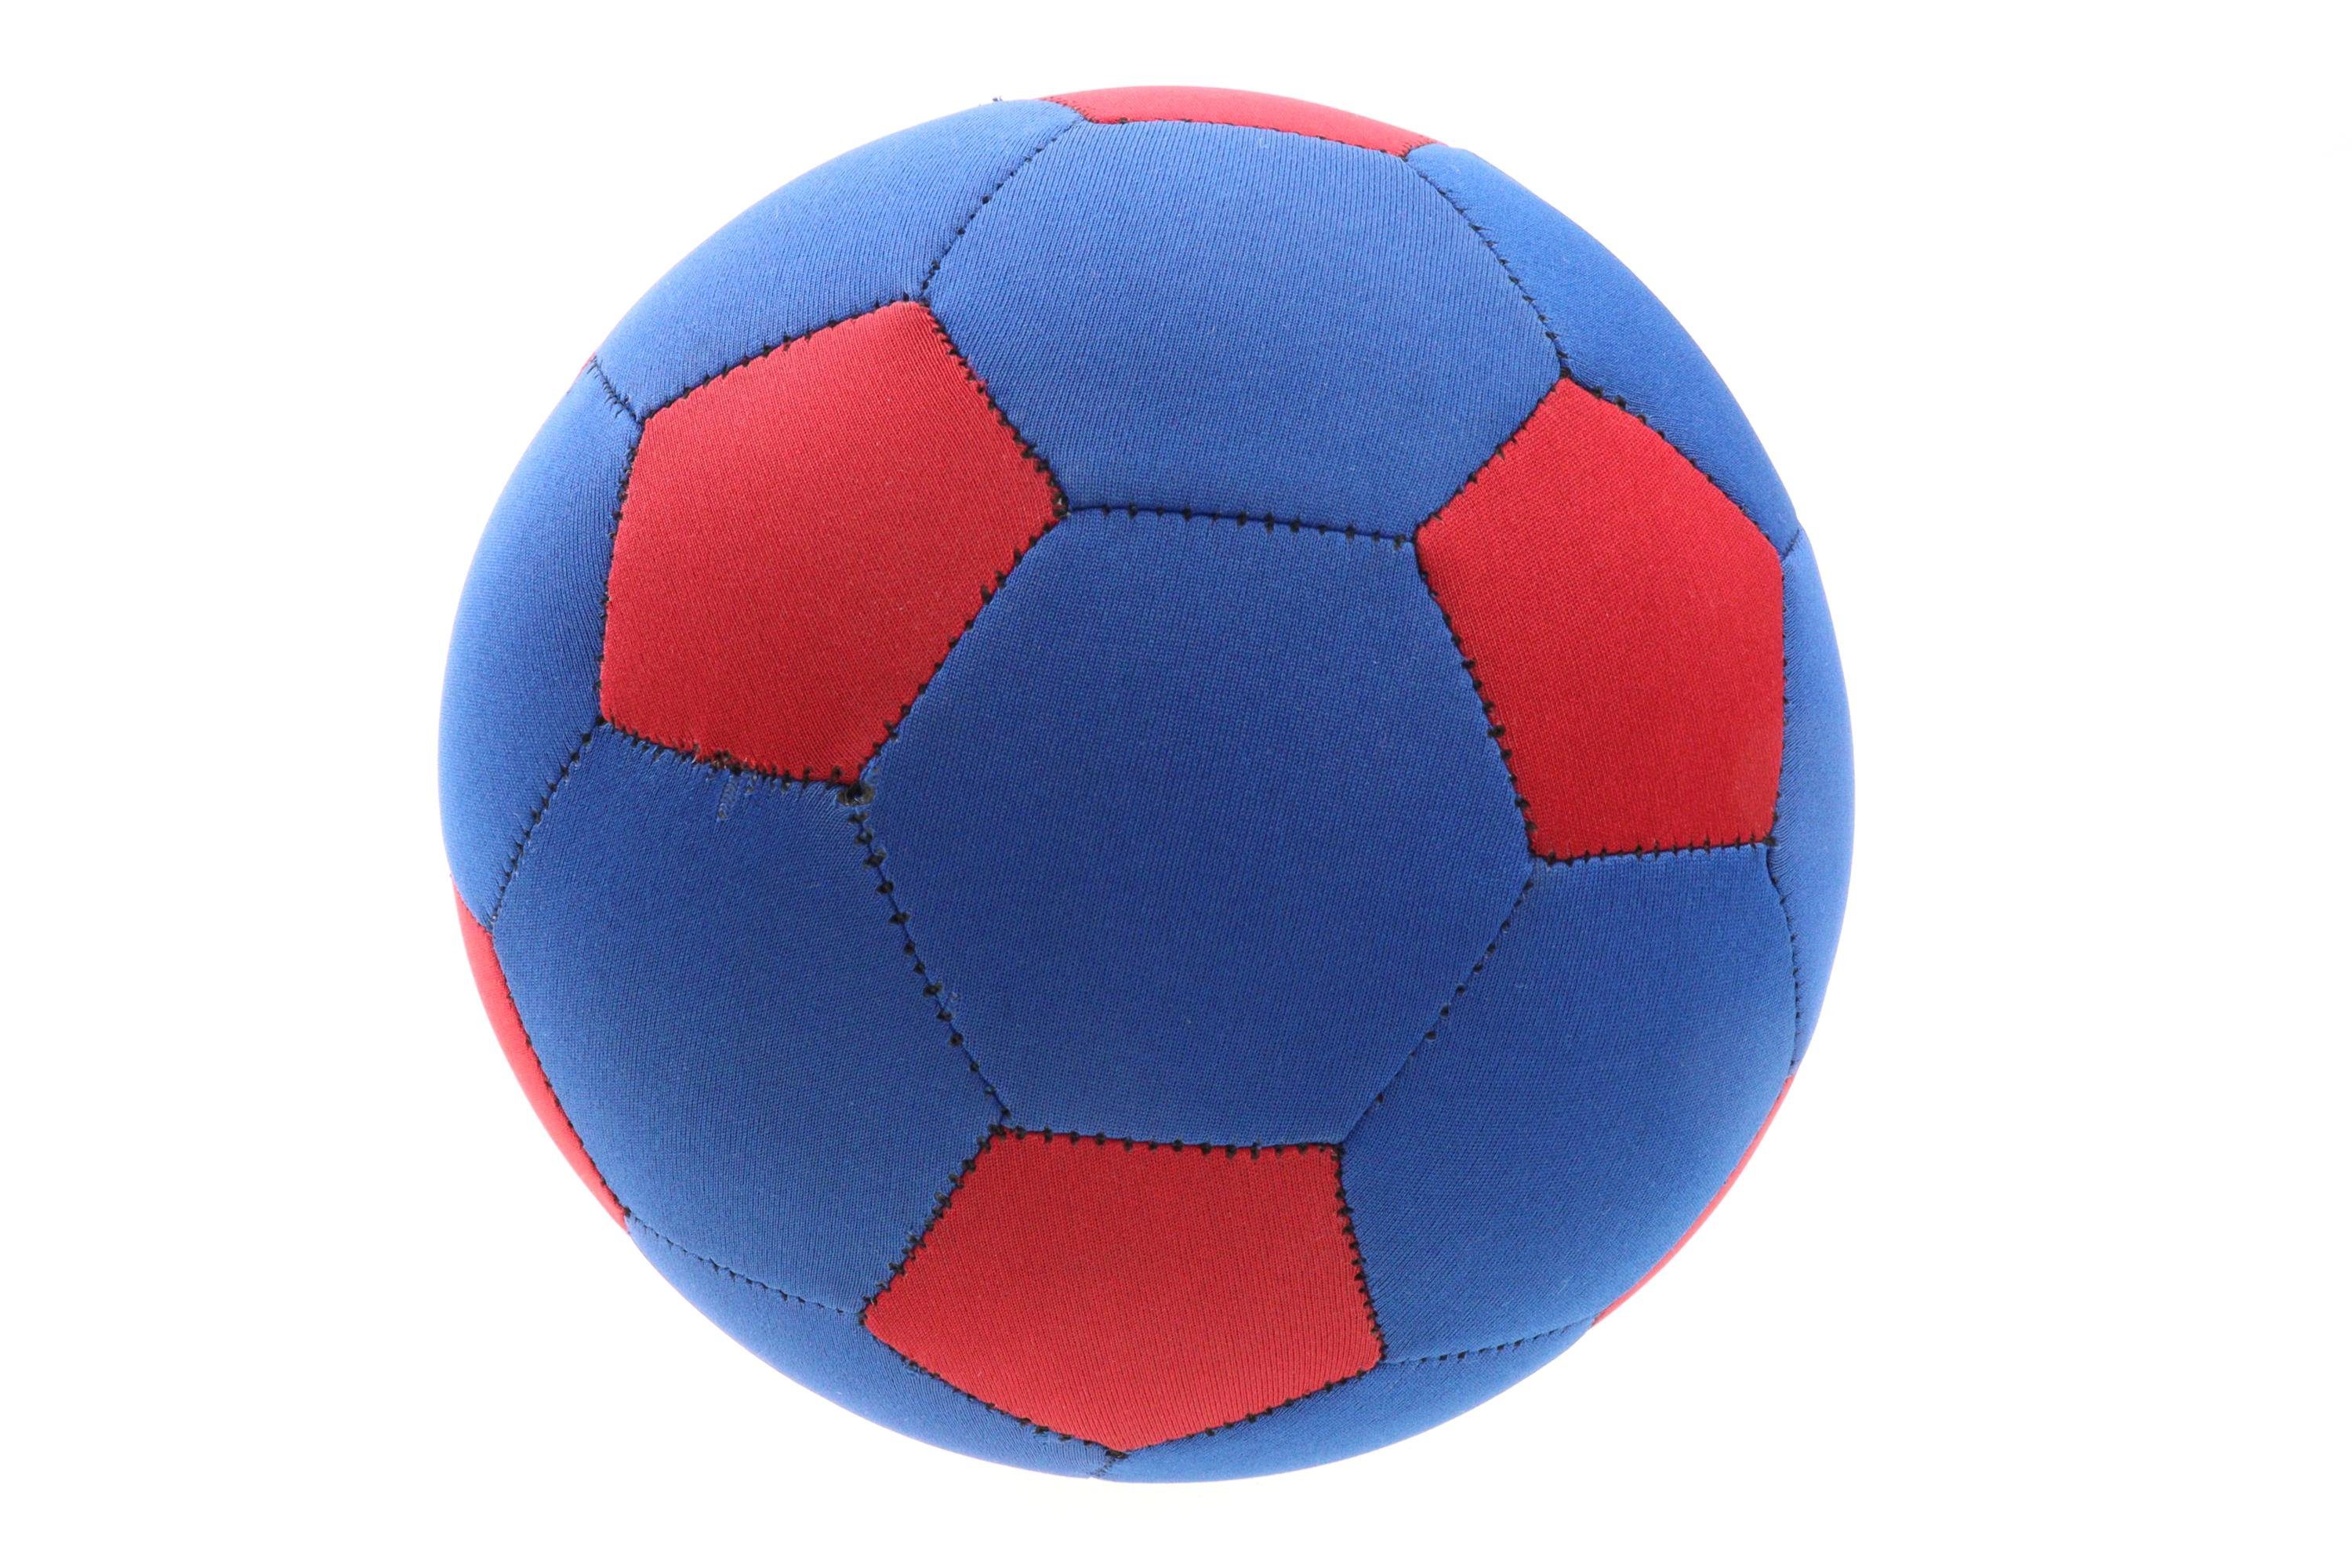 ELLUG Wasserball Blau-roter Neopren Ball als Fußball für Groß und Klein,  wasserfest salzwasserfest, Wasserspielzeug Strandspielzeug Urlaub Sommer  Wasser